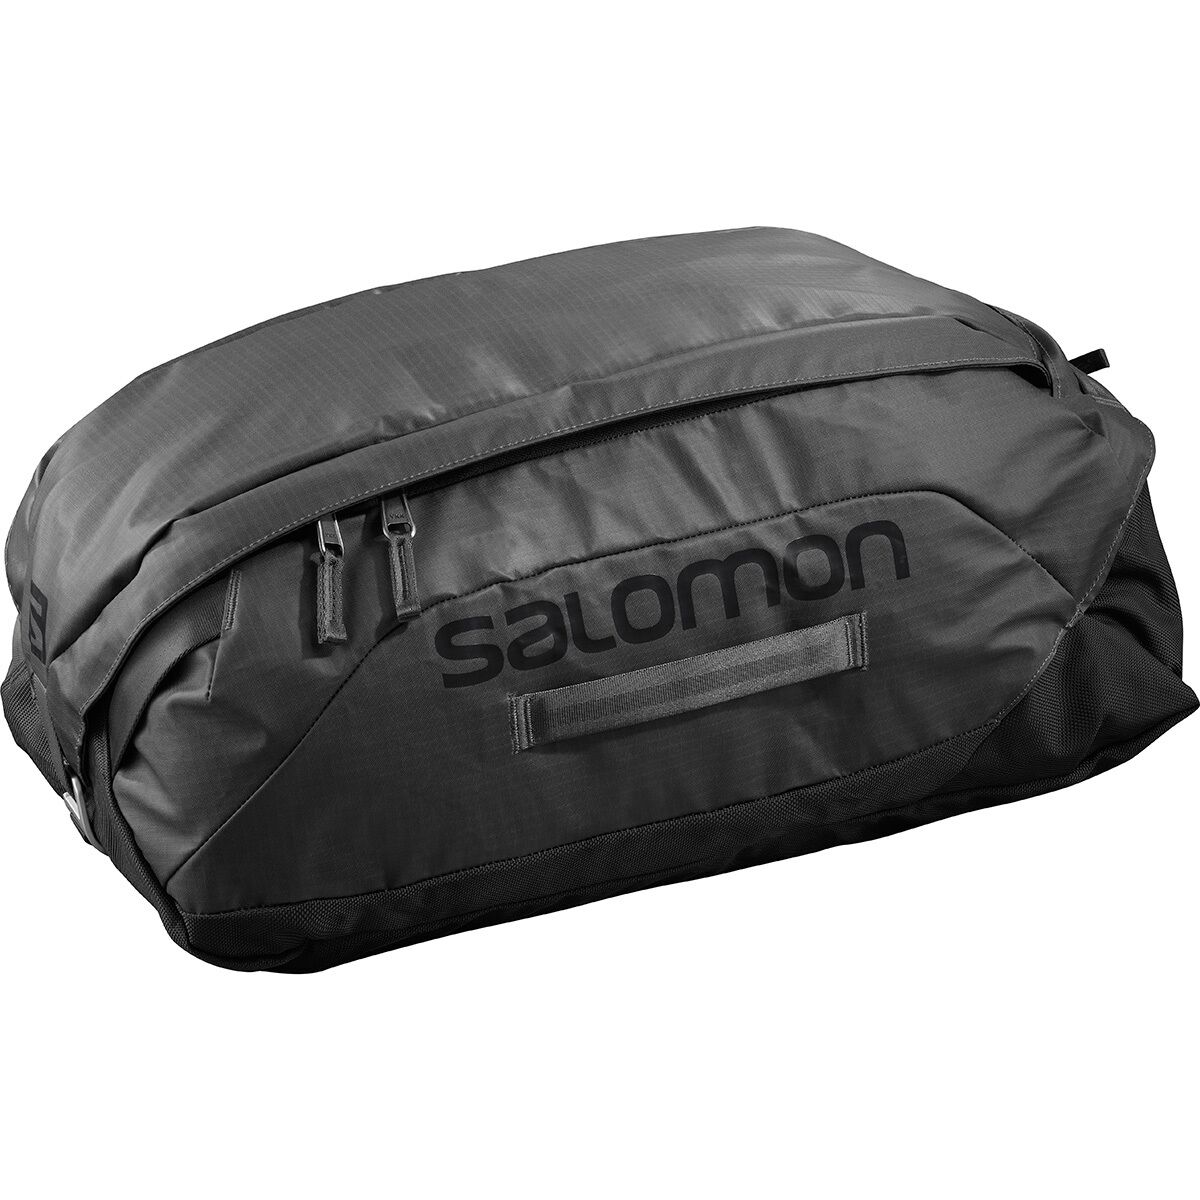 Salomon Outlife 25L Duffel Bag